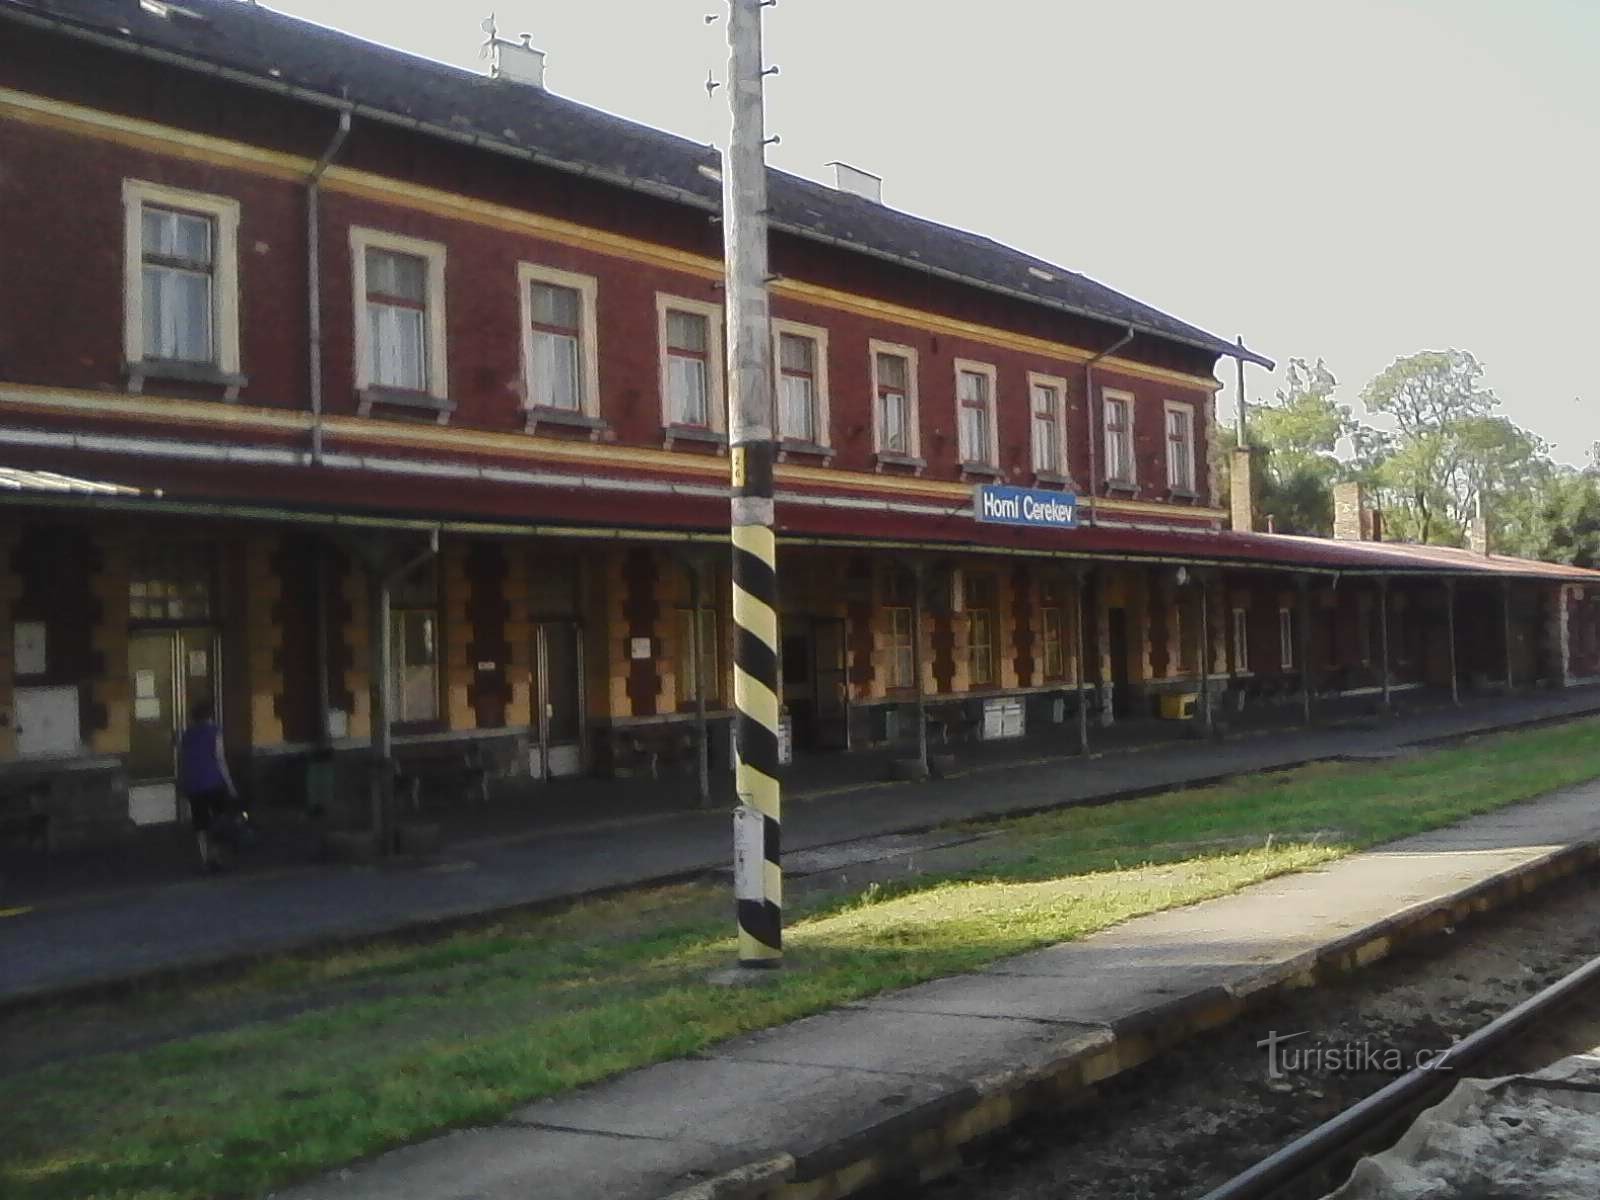 1. Llegada a la estación de tren de Horní Cerekva, que cierra la línea desde Tábor.